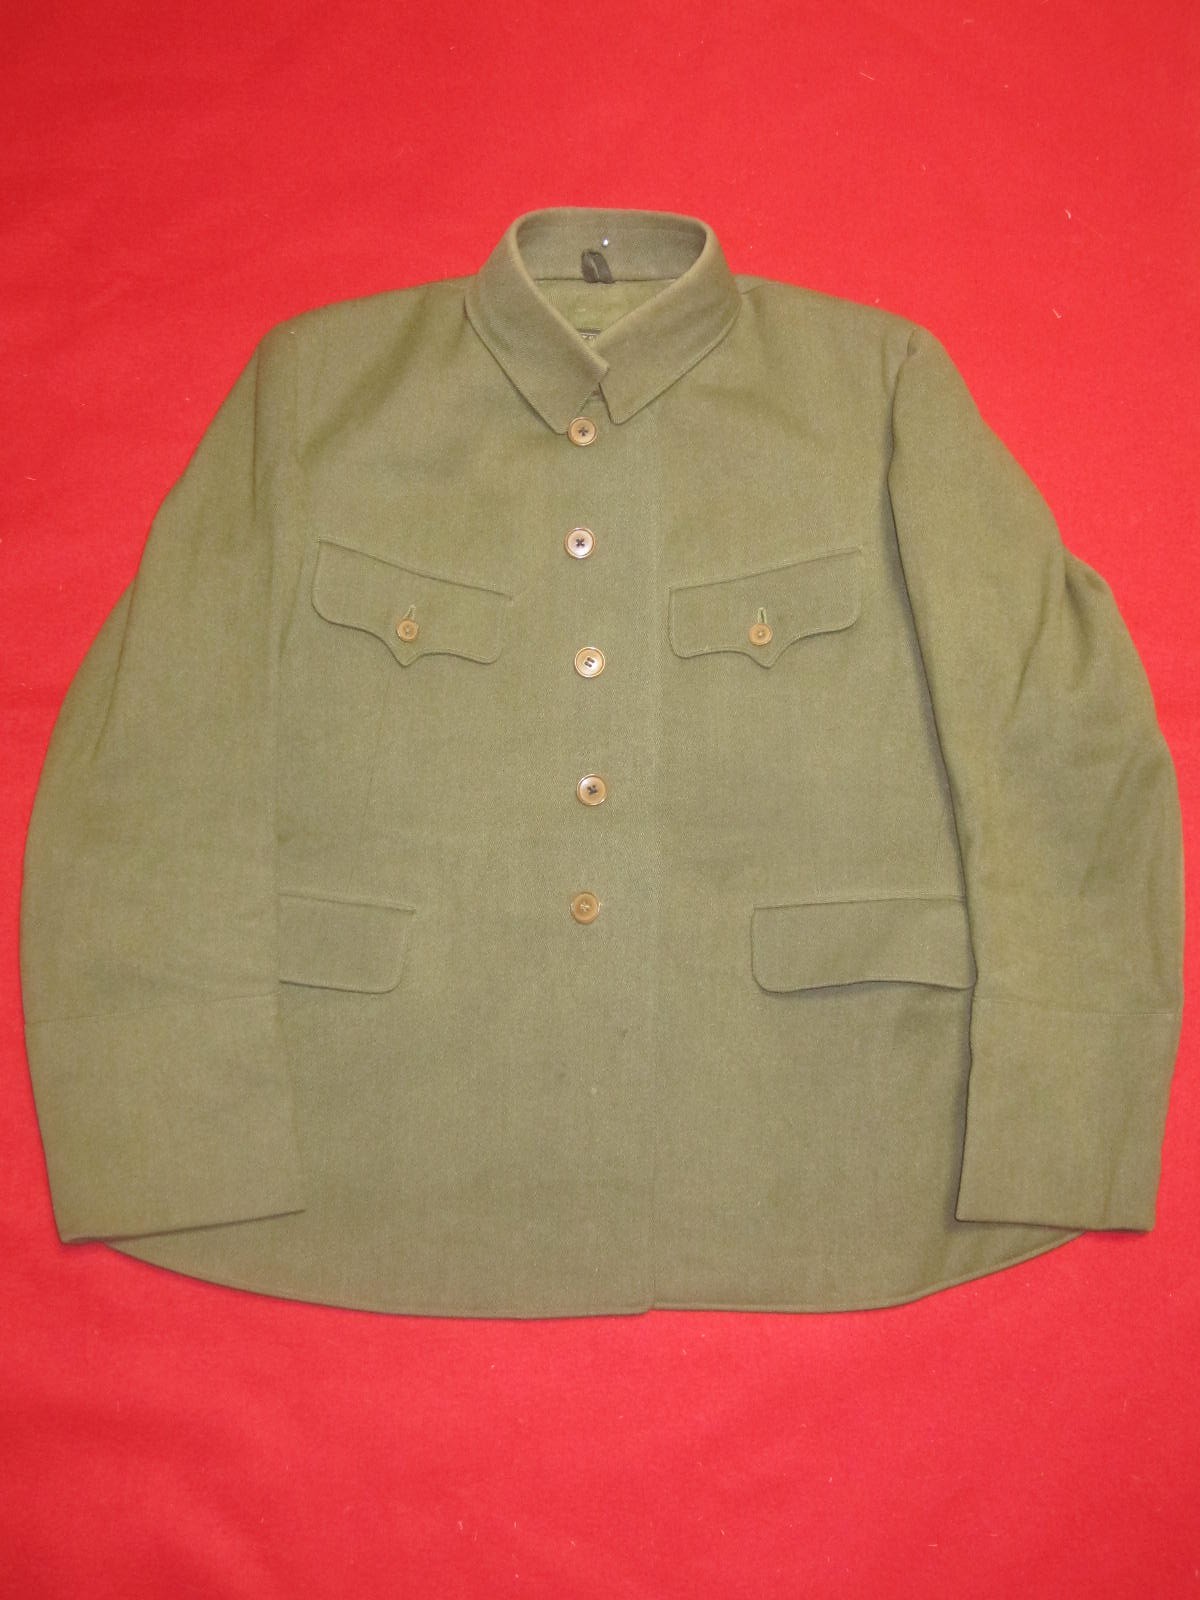 日本陸軍九八式将校冬軍衣、短袴 | 軍装奉行-日本陸軍 軍服 装備